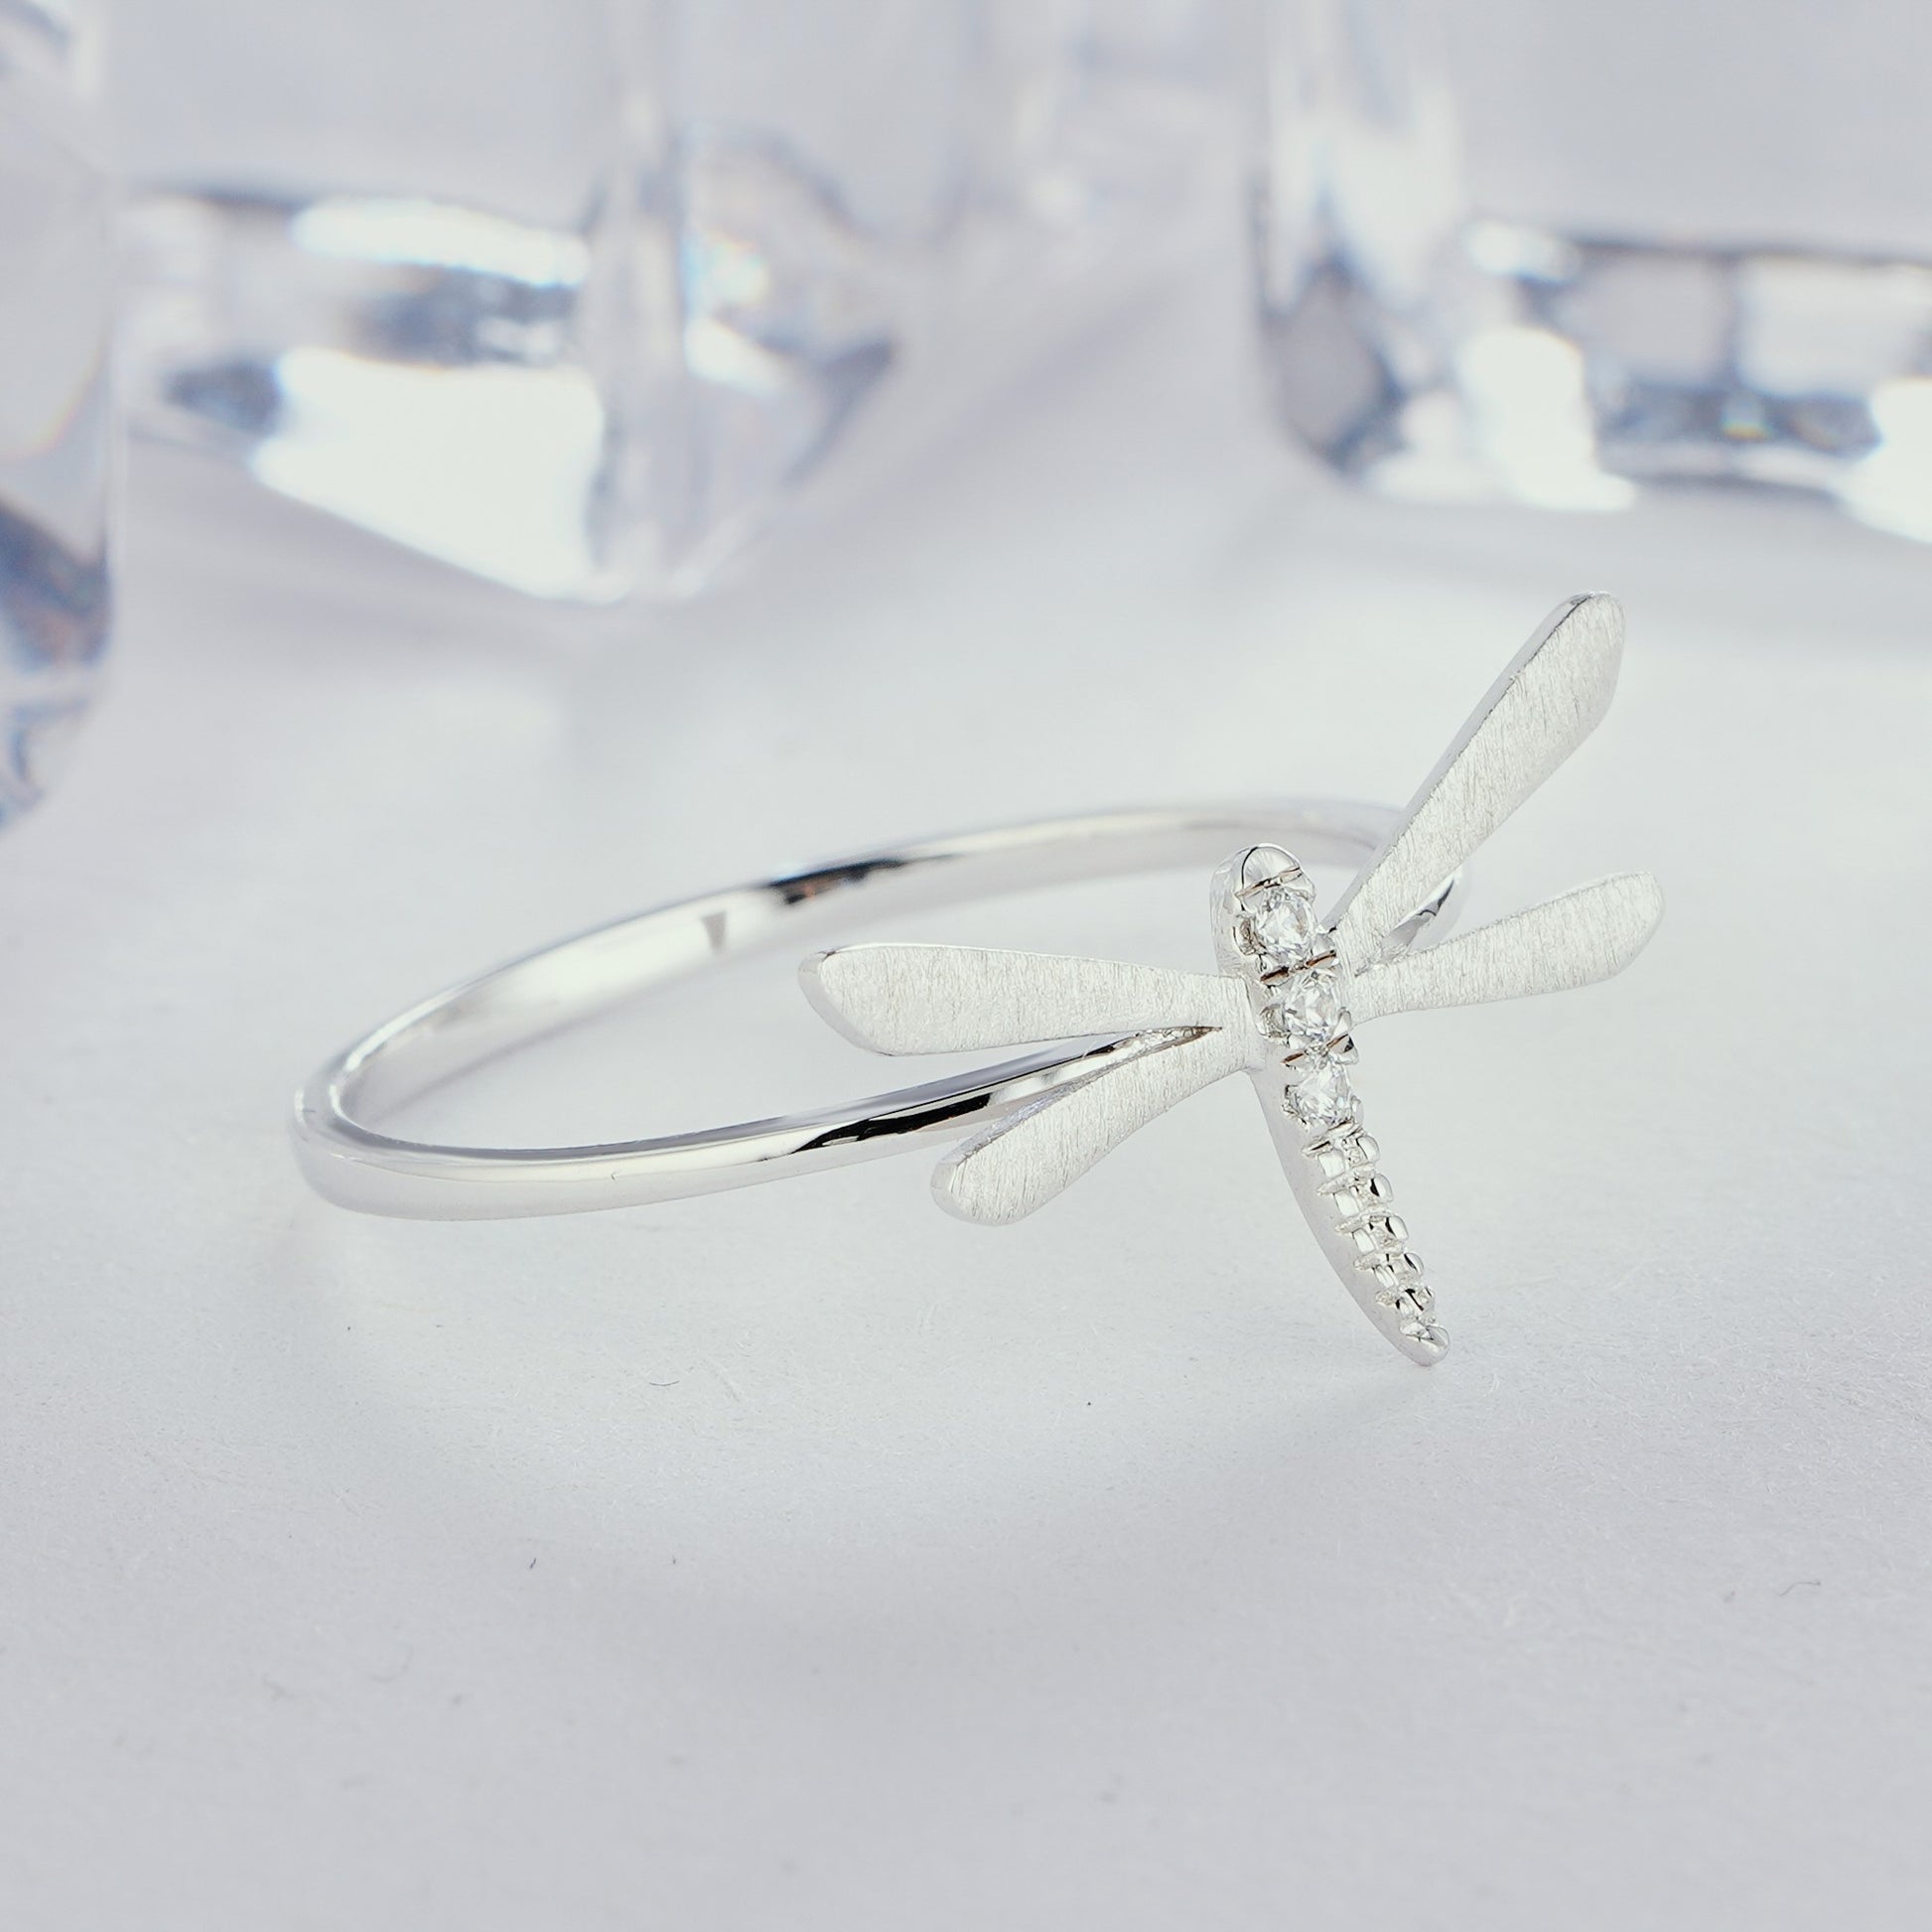 Stylish Dragonfly Engagement 14K/18K Gold Diamond Name Ring - ShainJewelry